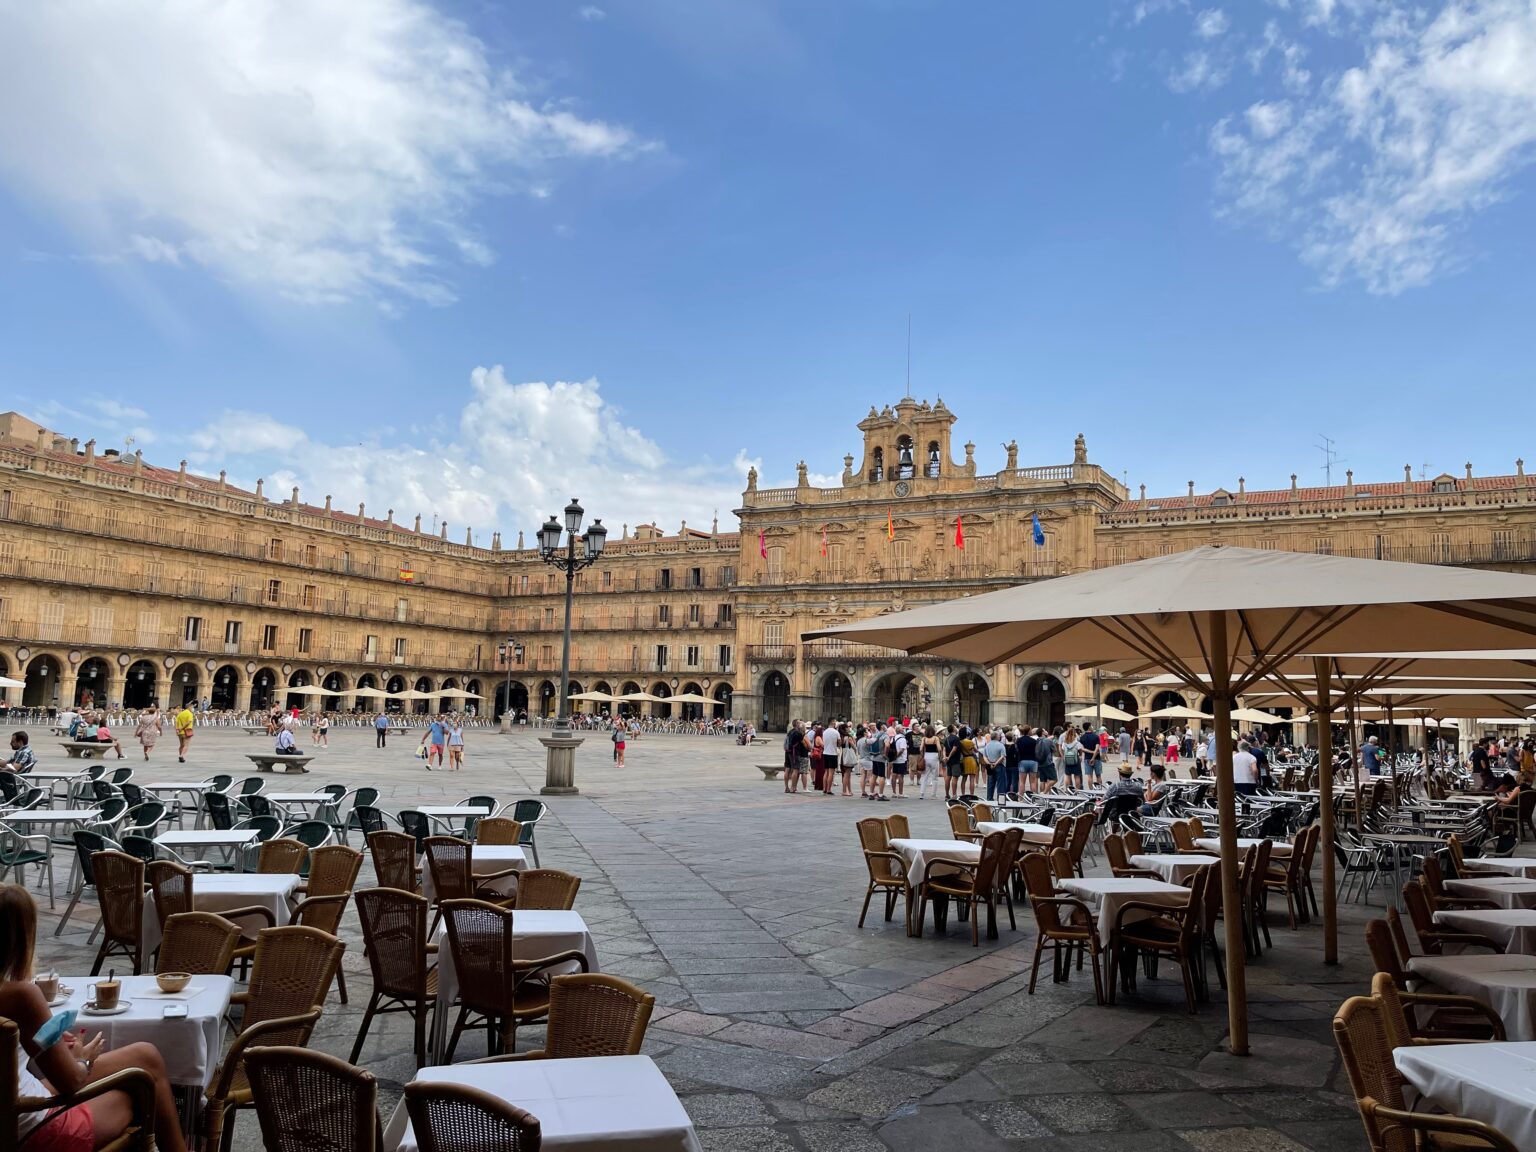 The main square in Salamanca.